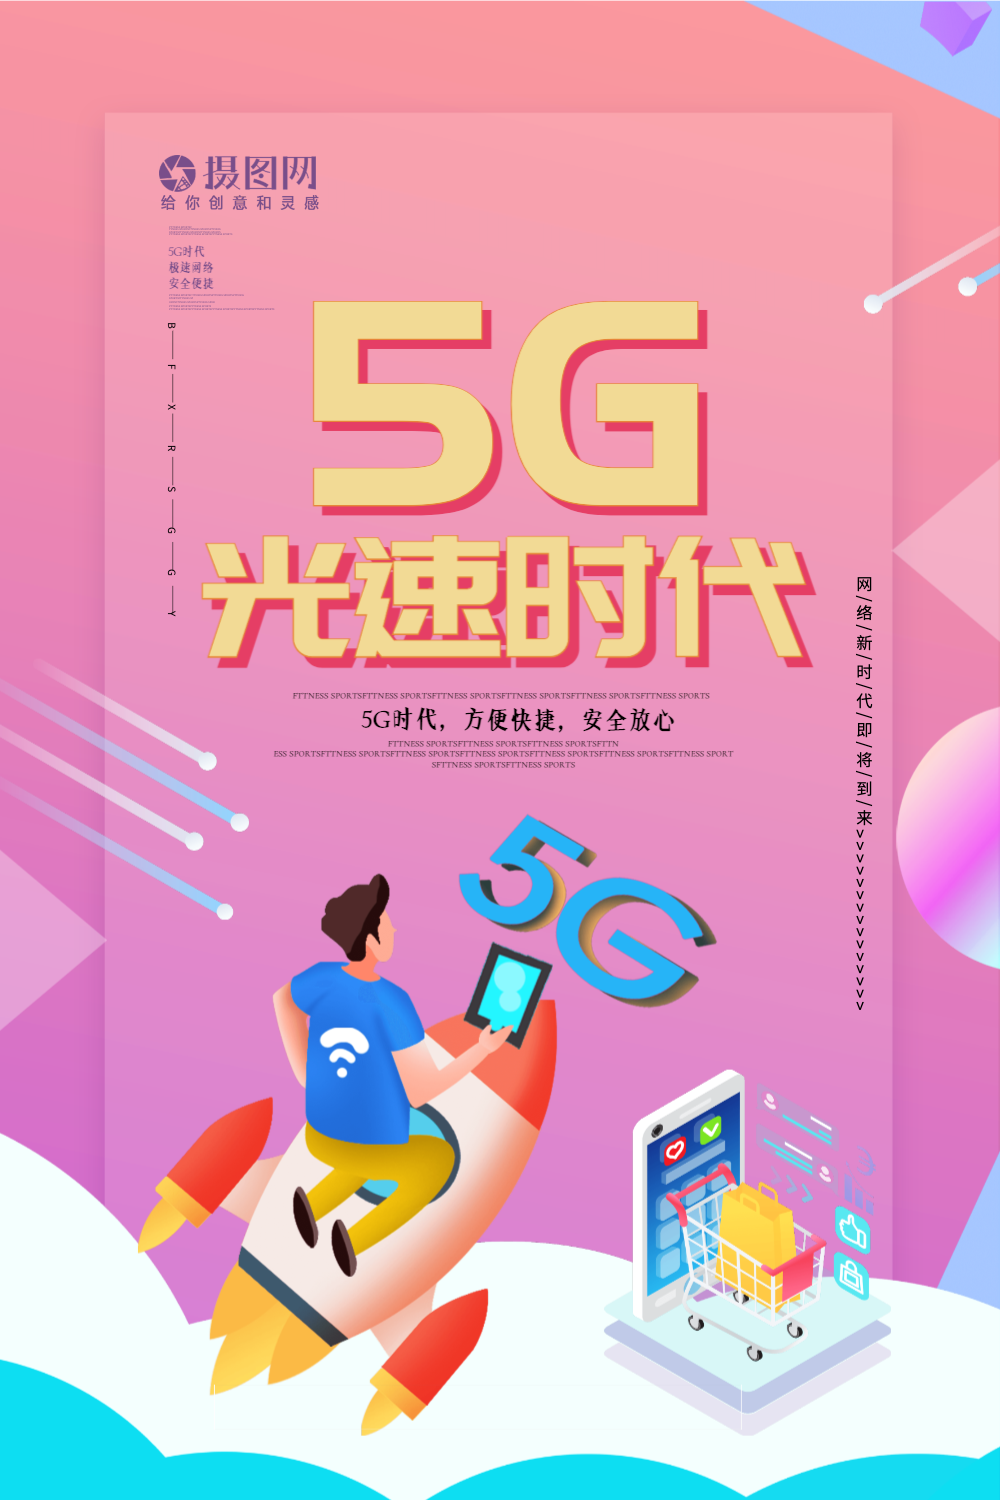 辽宁 5G 网络正式启动，开启全新科技时代，颠覆生活模式，带来无限可能  第7张